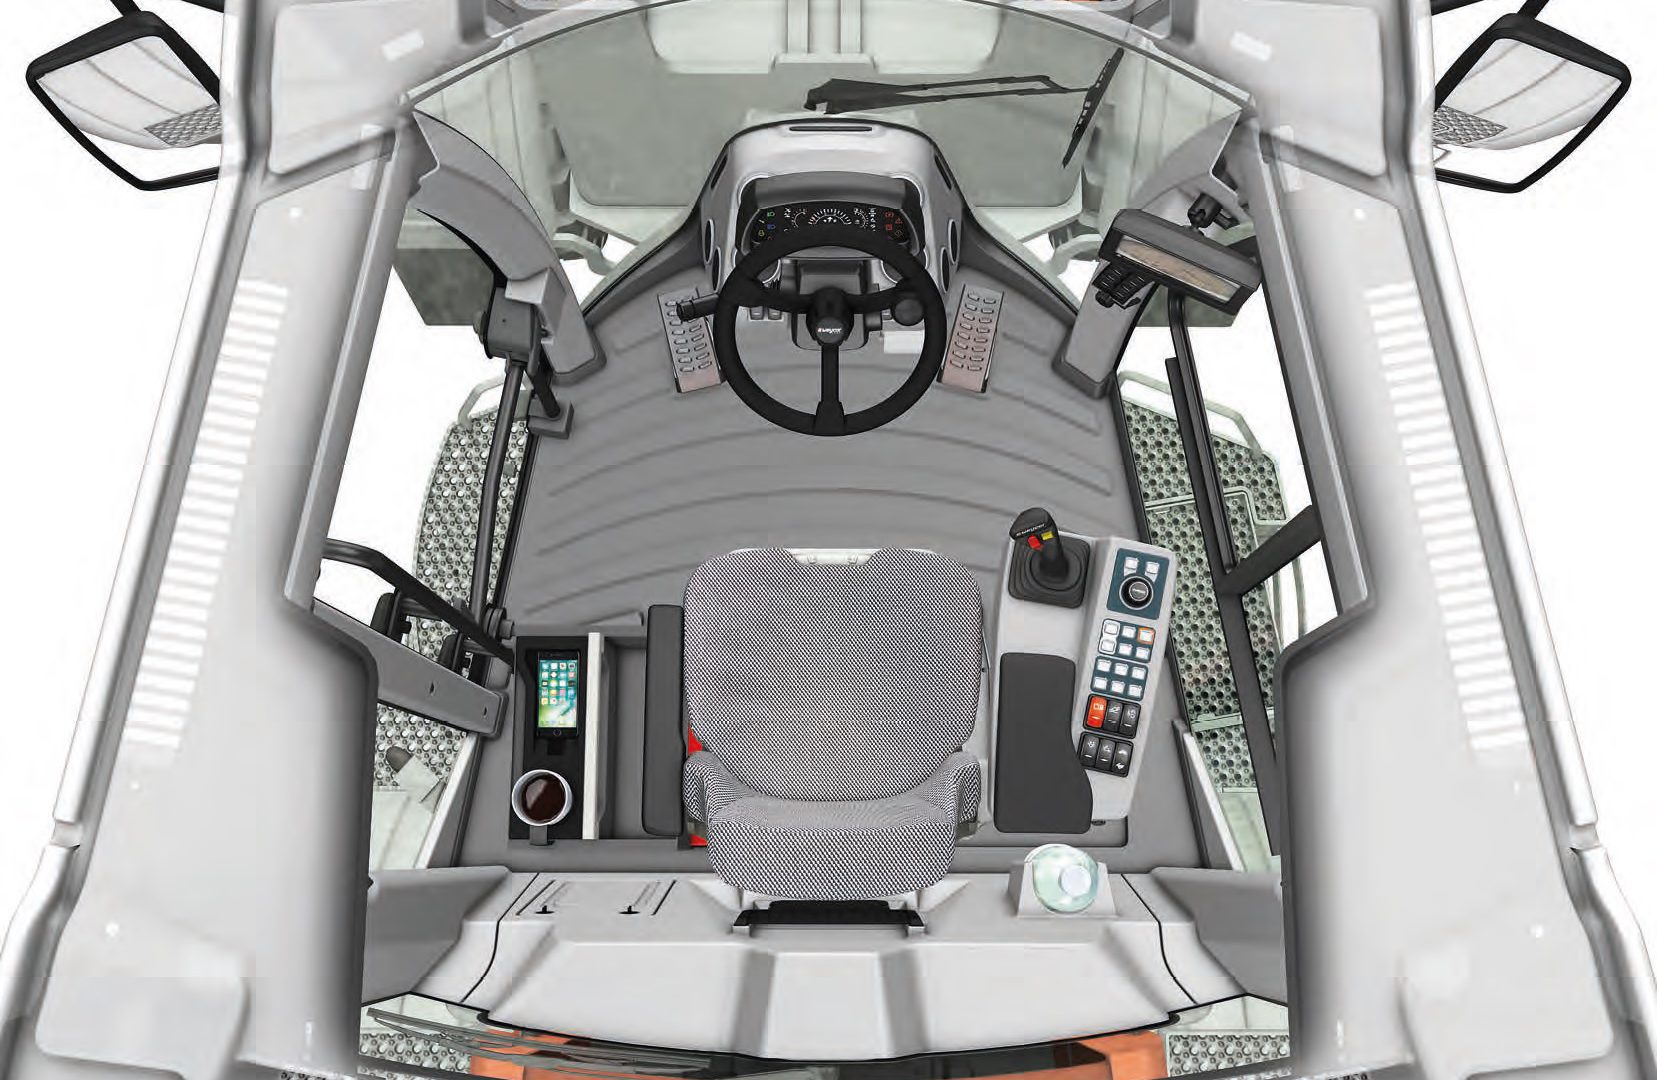 La disposizione ergonomica della cabina Weycor è stata premiata con l'IF Design Award